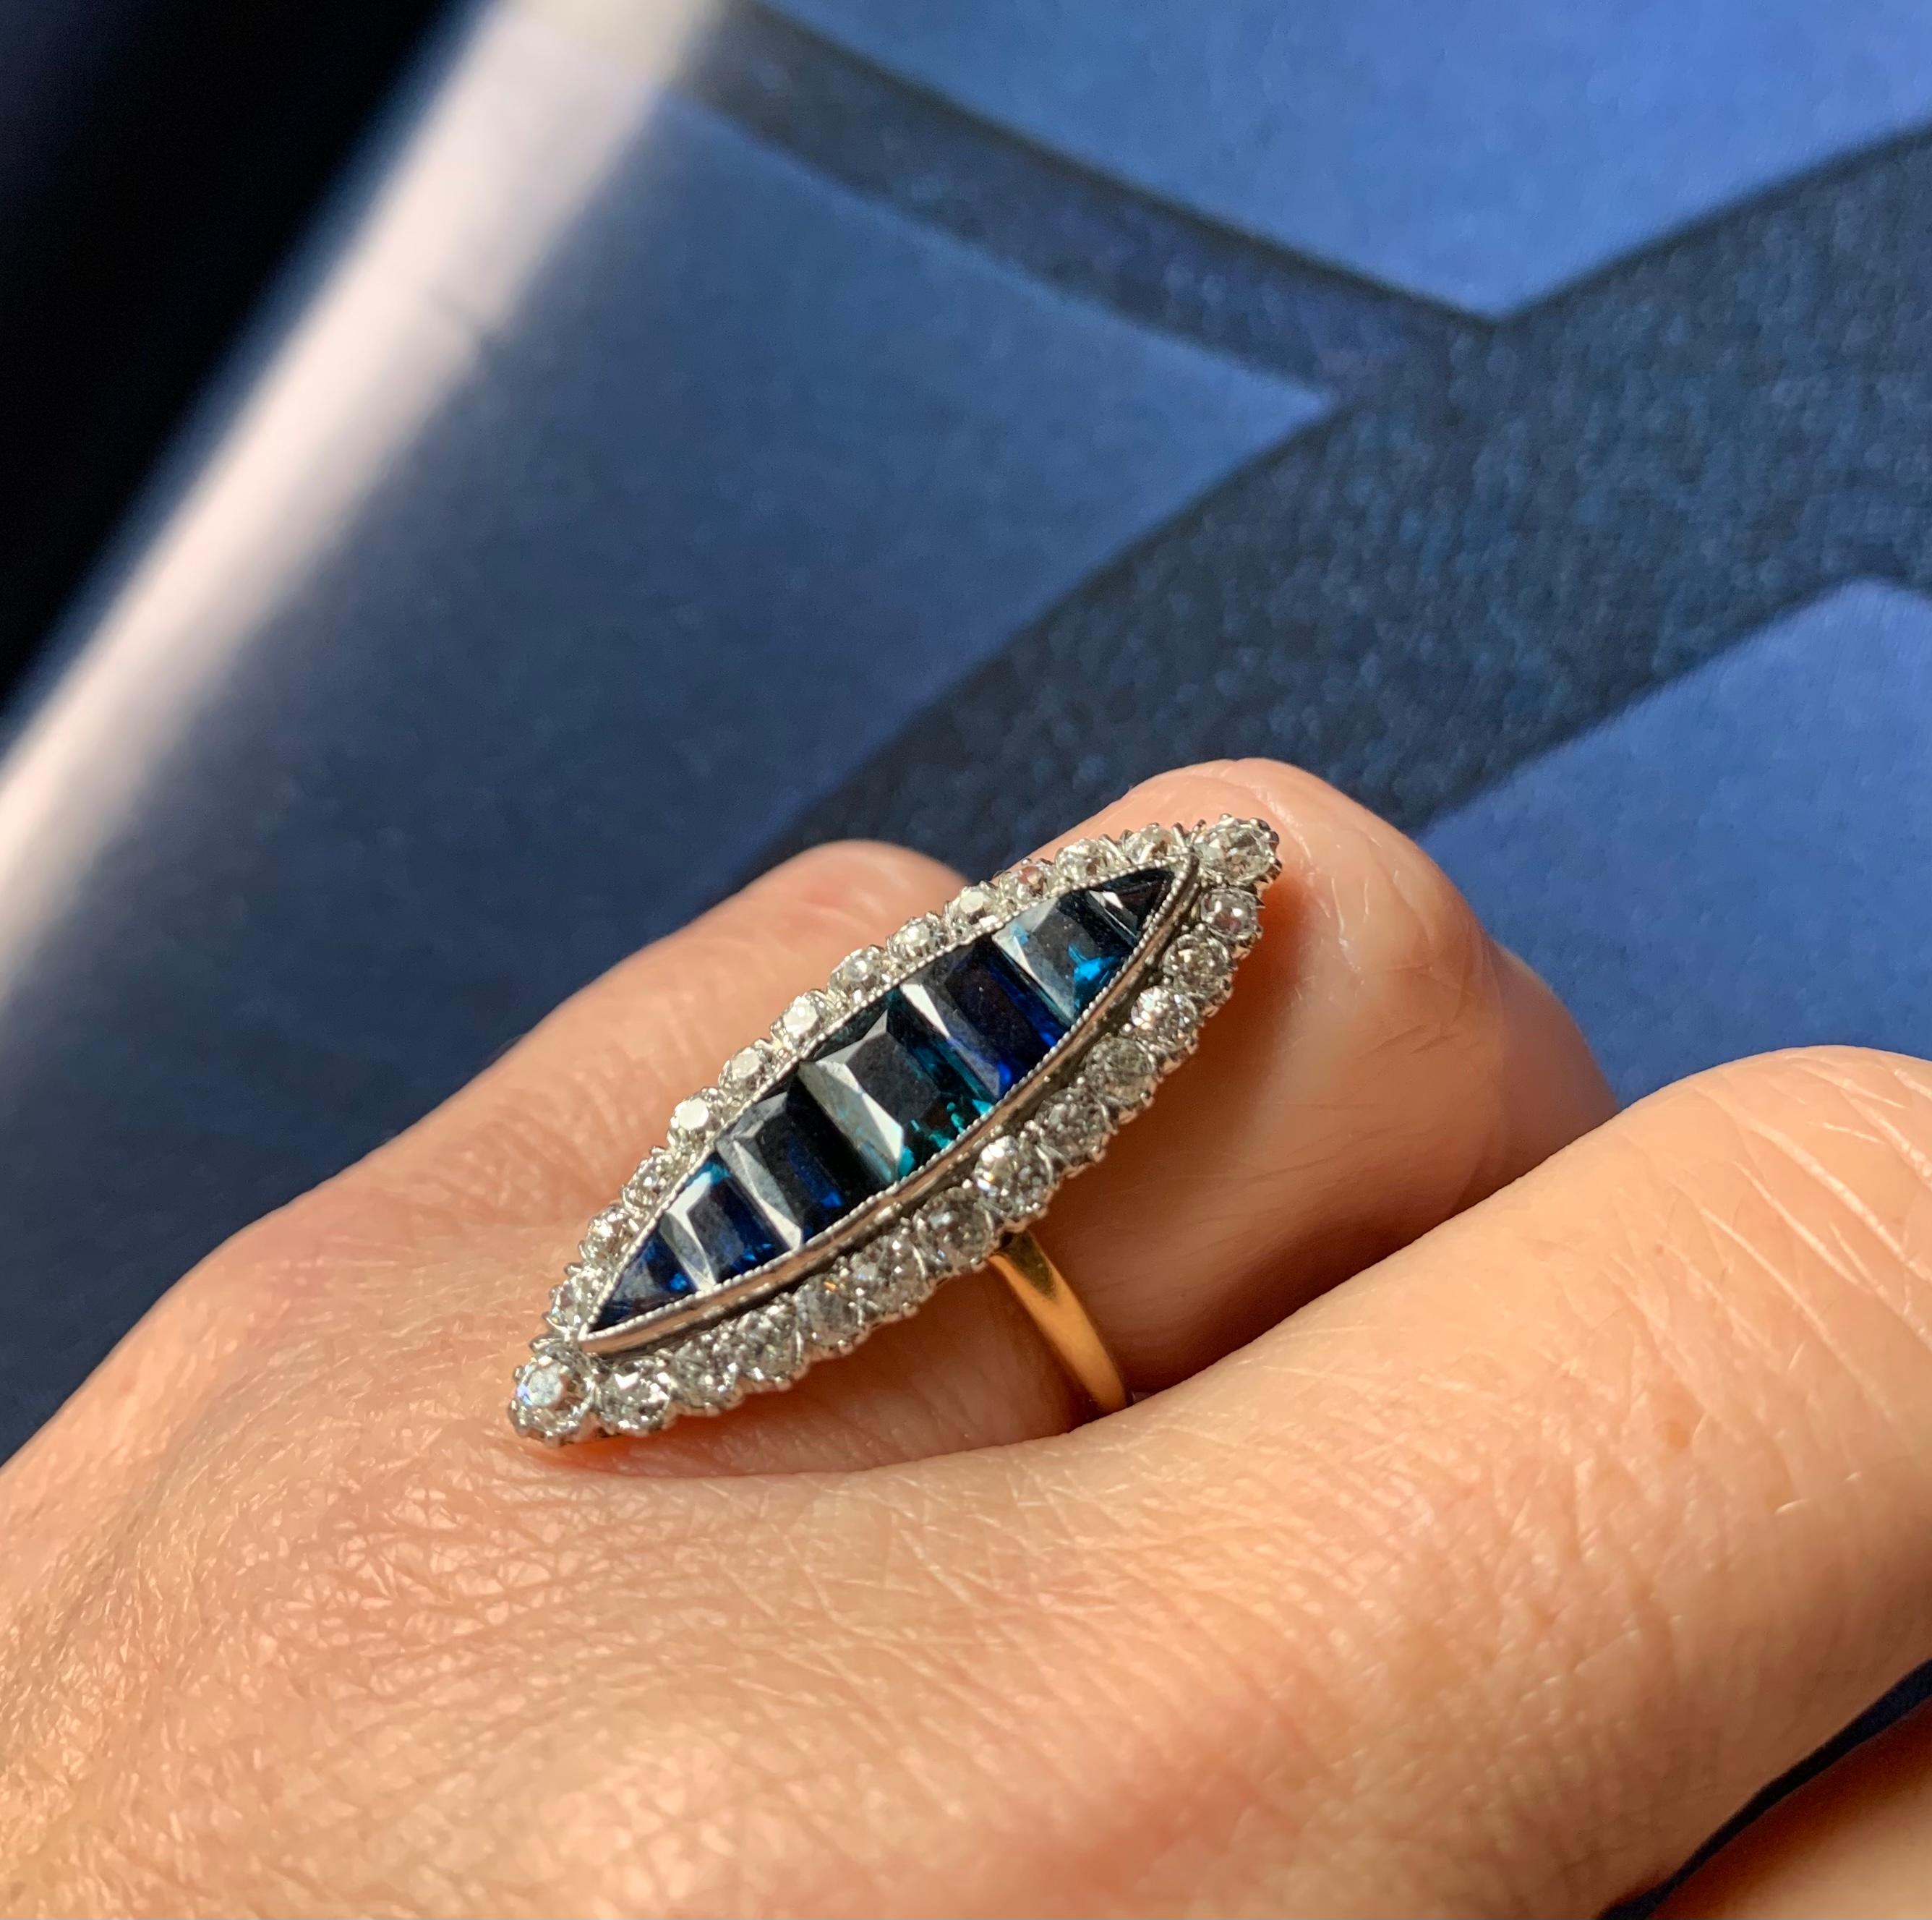 Élégante bague Navette en diamant et saphir d'époque édouardienne mesurant une longueur impressionnante de 33 mm, approximativement d'une jointure à l'autre du doigt. La forme gracieuse et sensuelle a la capacité d'allonger le doigt et de compléter